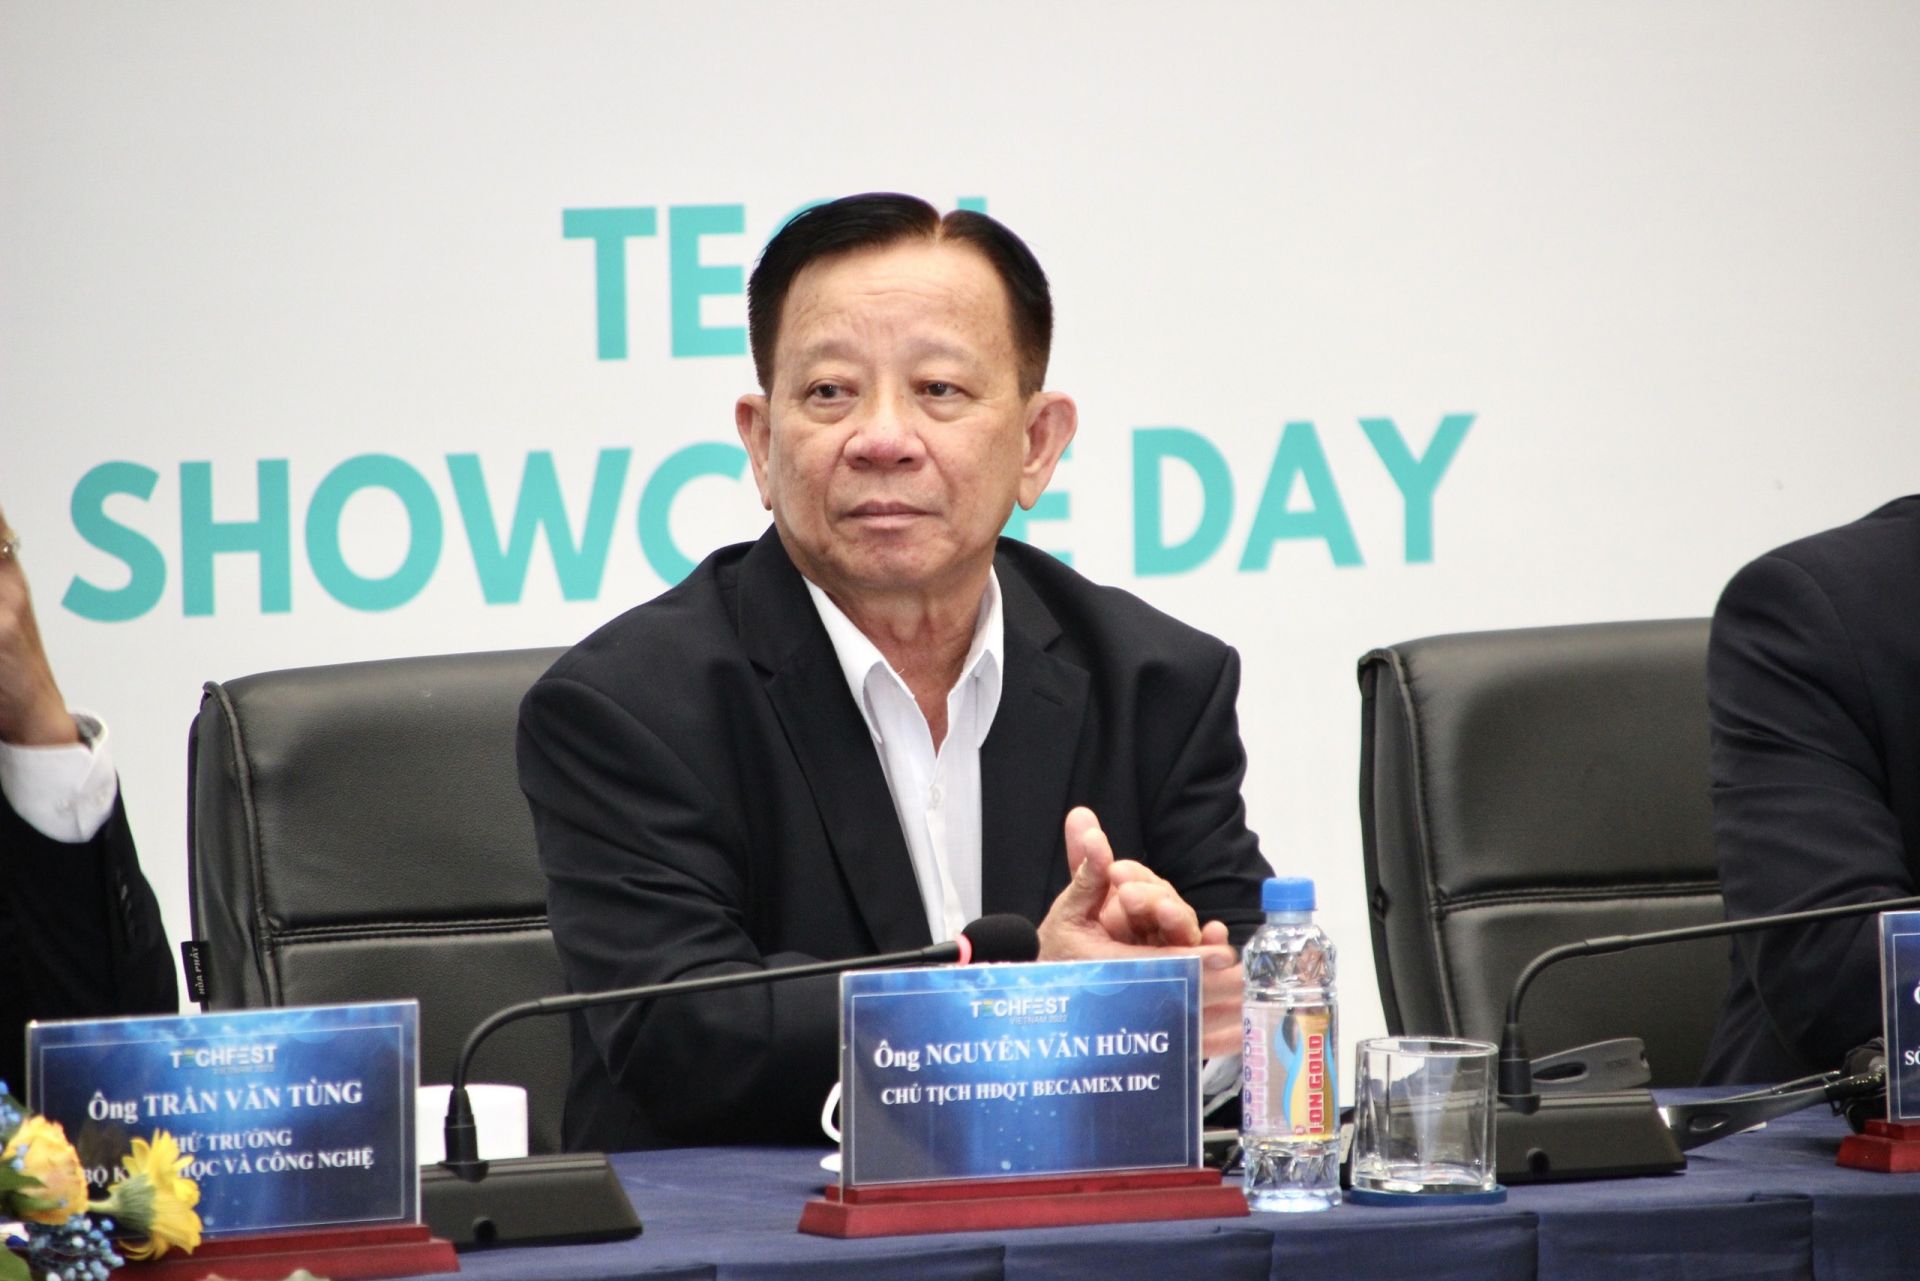 ng Nguyễn Văn Hùng – Chủ tịch HĐQT Tổng công ty Becamex IDC